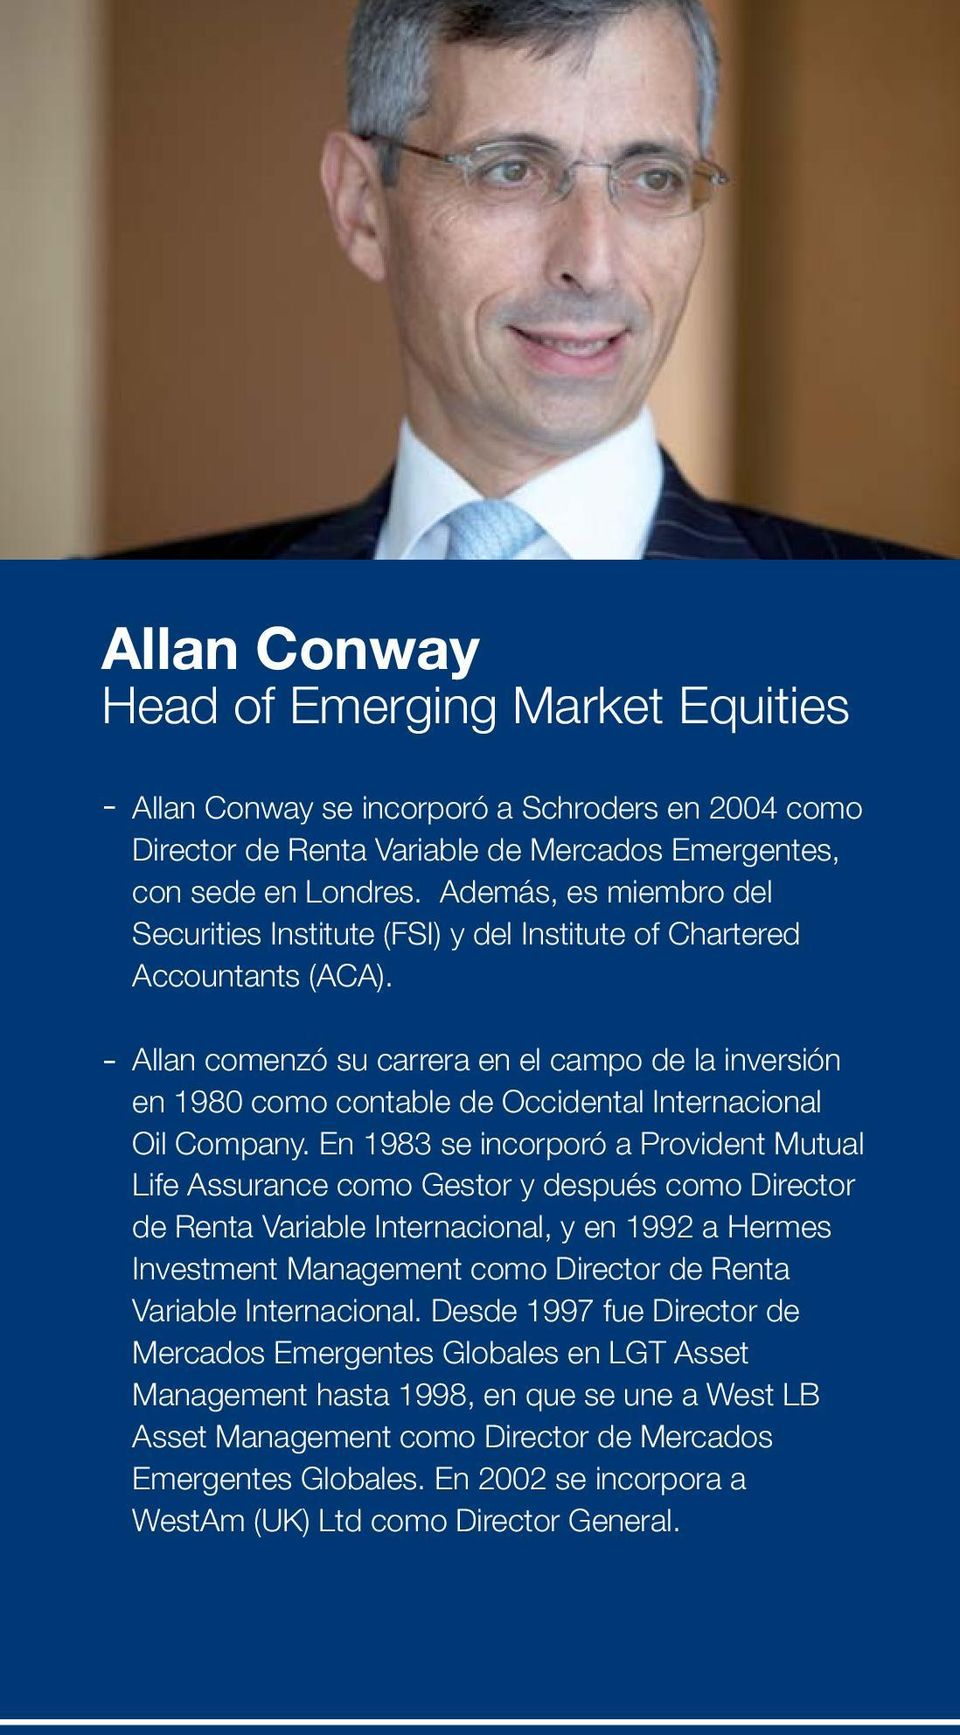 Allan comenzó su carrera en el campo de la inversión en 1980 como contable de Occidental Internacional Oil Company.